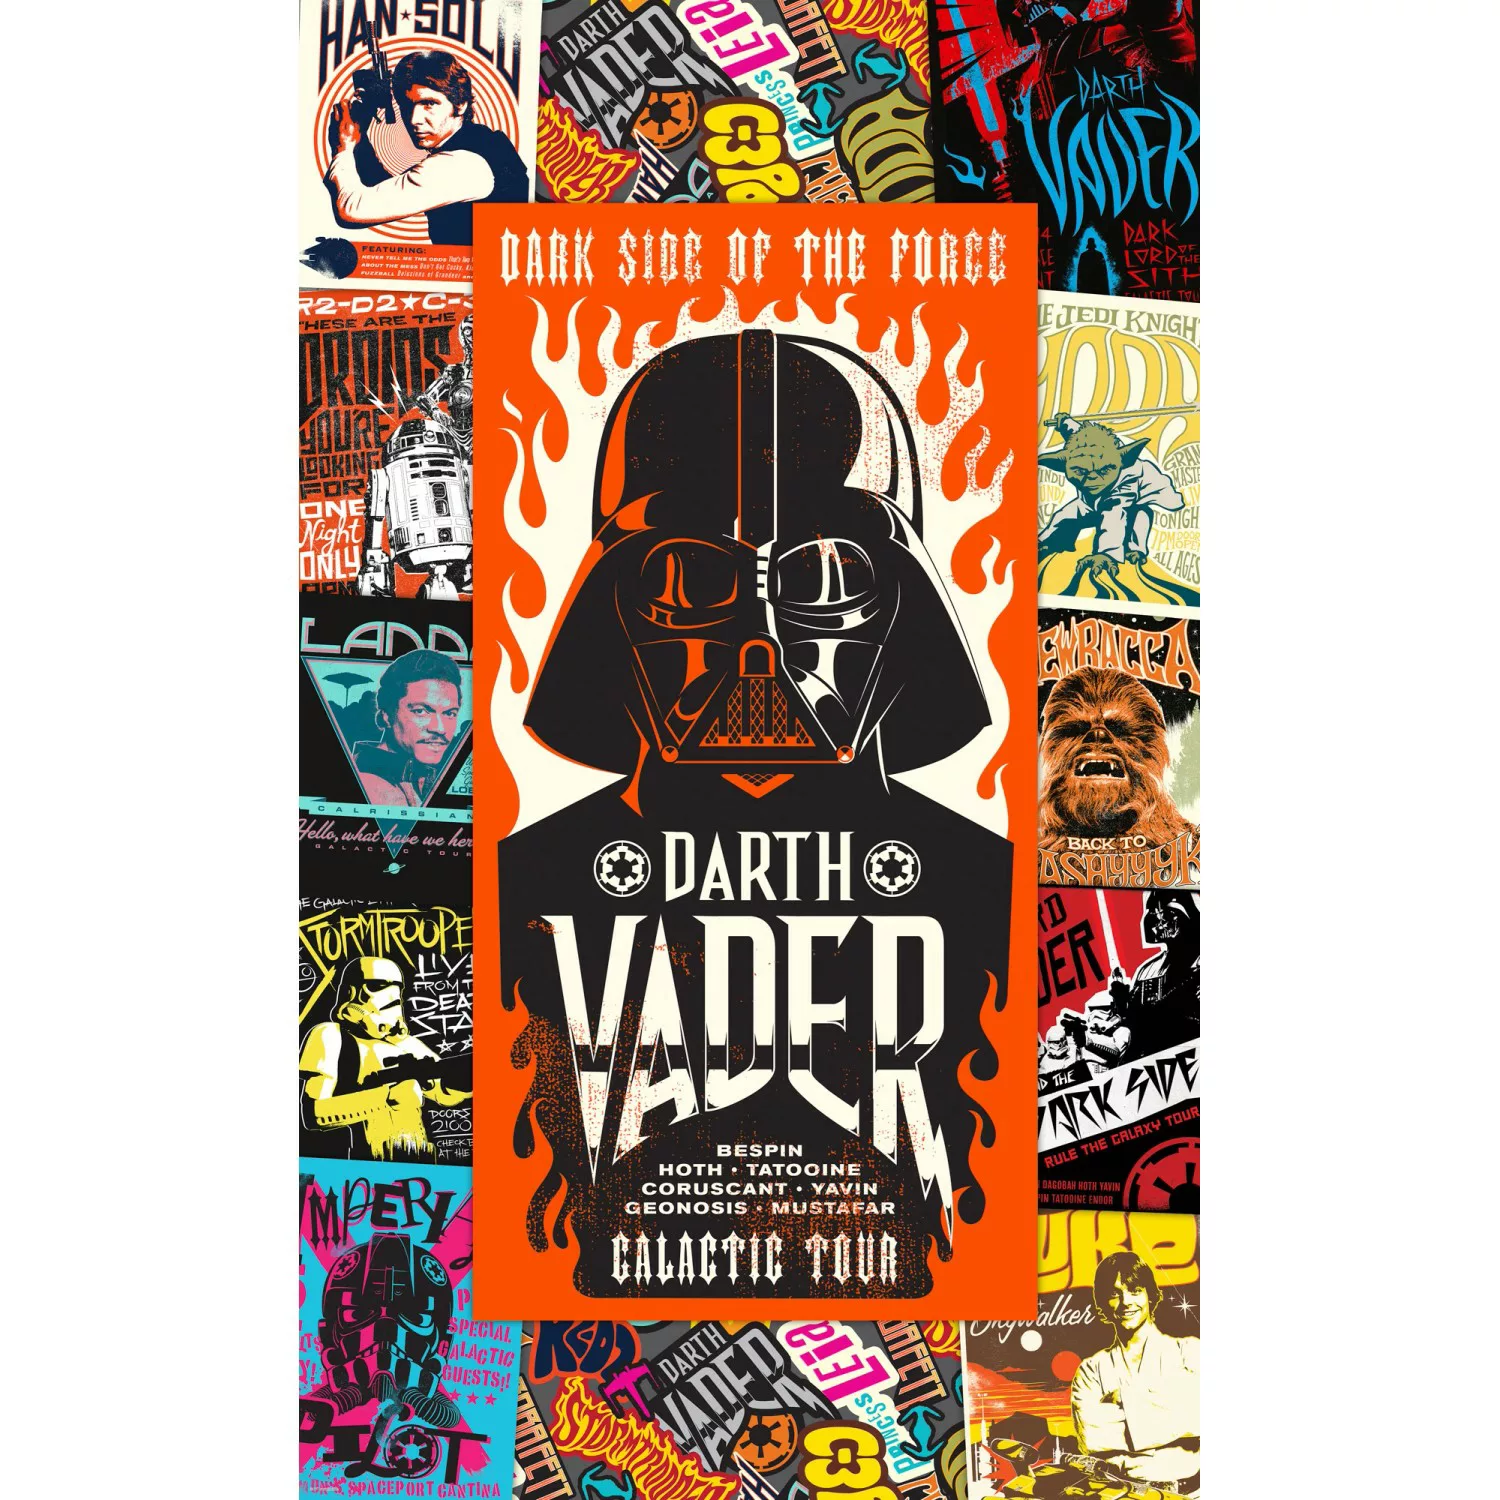 Komar Vliestapete »Star Wars Rock On Posters« günstig online kaufen